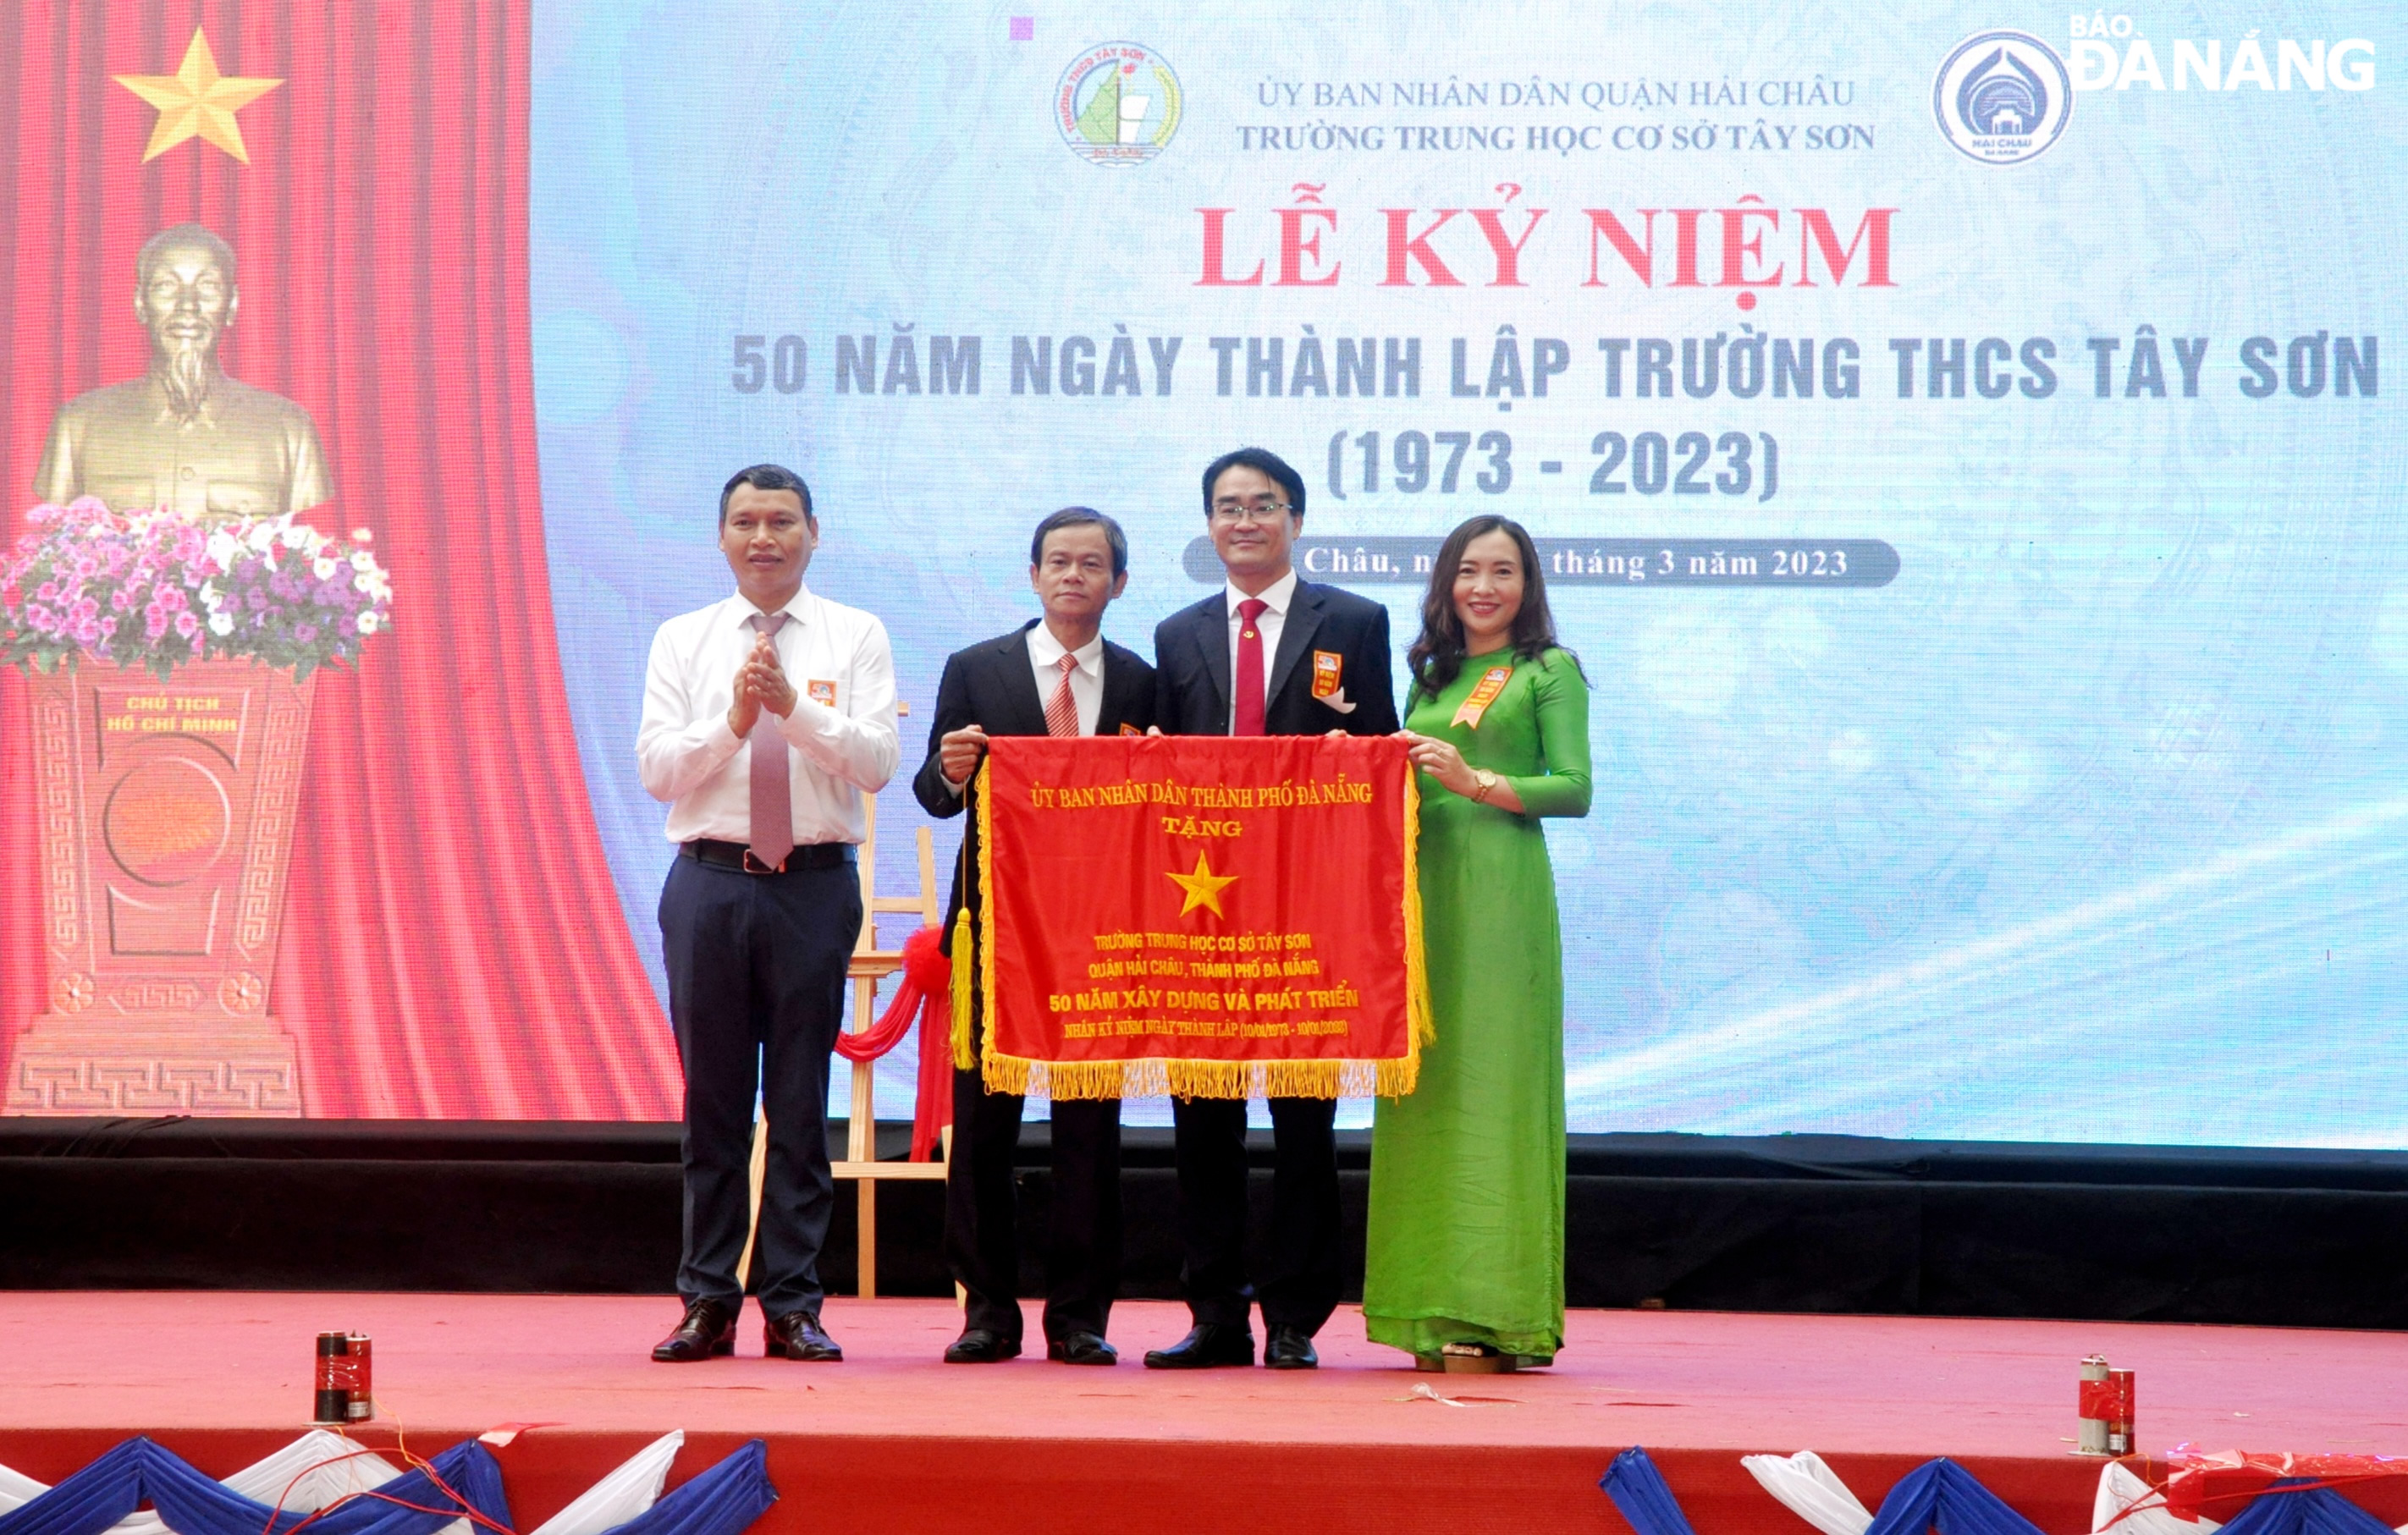 Phó Chủ tịch Thường trực UBND thành phố Hồ Kỳ Minh (bên trái) trao tặng Cờ truyền thống cho Trường THCS Tây Sơn. Ảnh: LÊ HÙNG